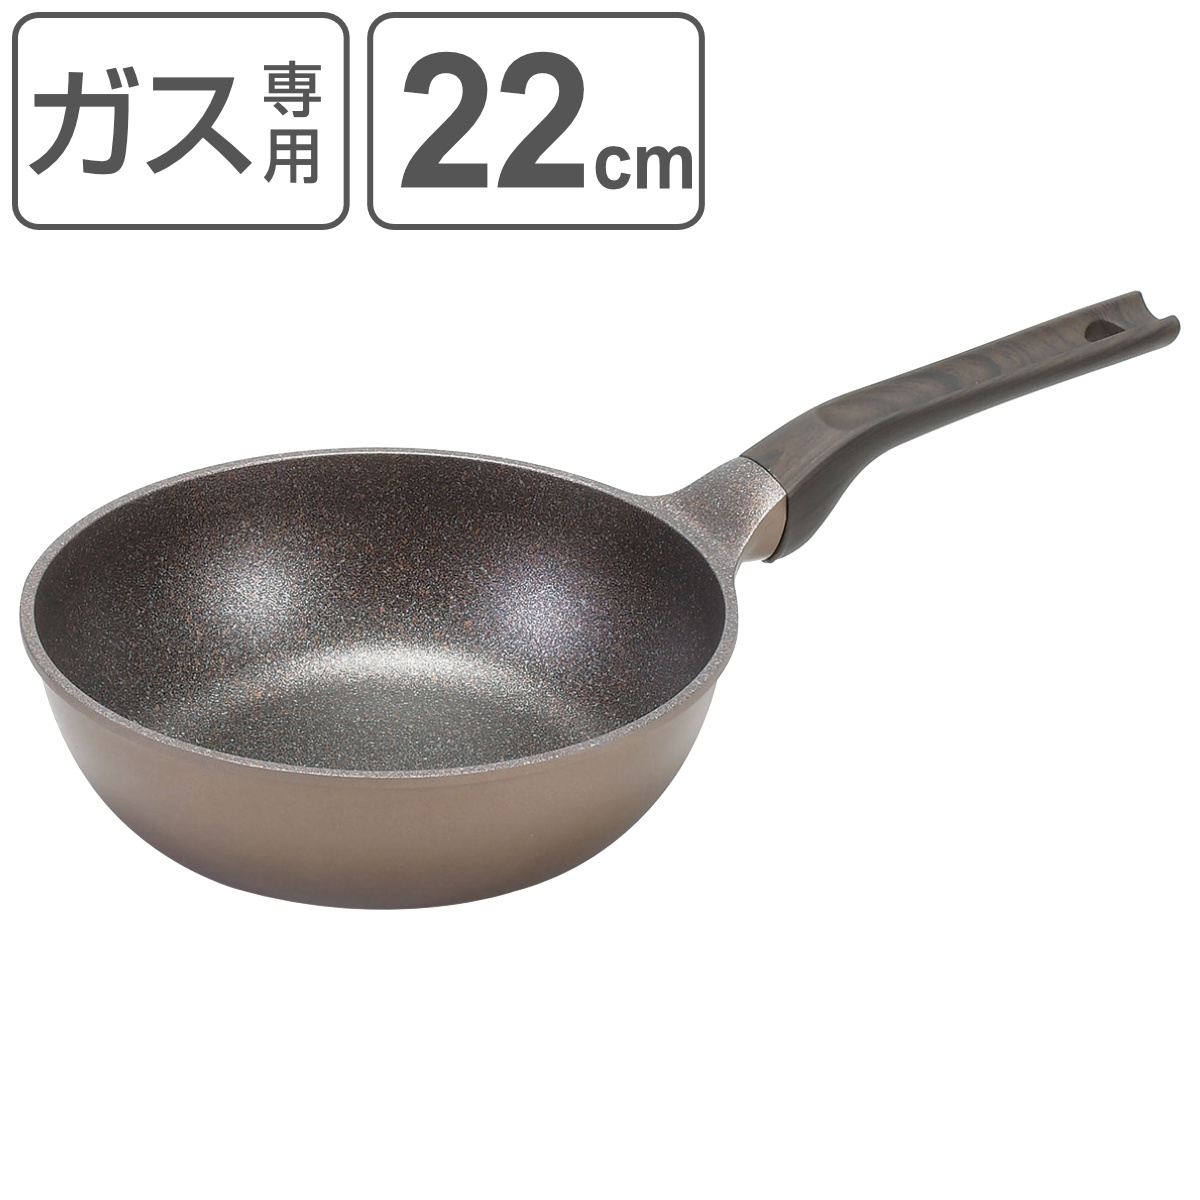 フライパン 22cm 深型 菜箸が置ける メガストーン深型フライパン